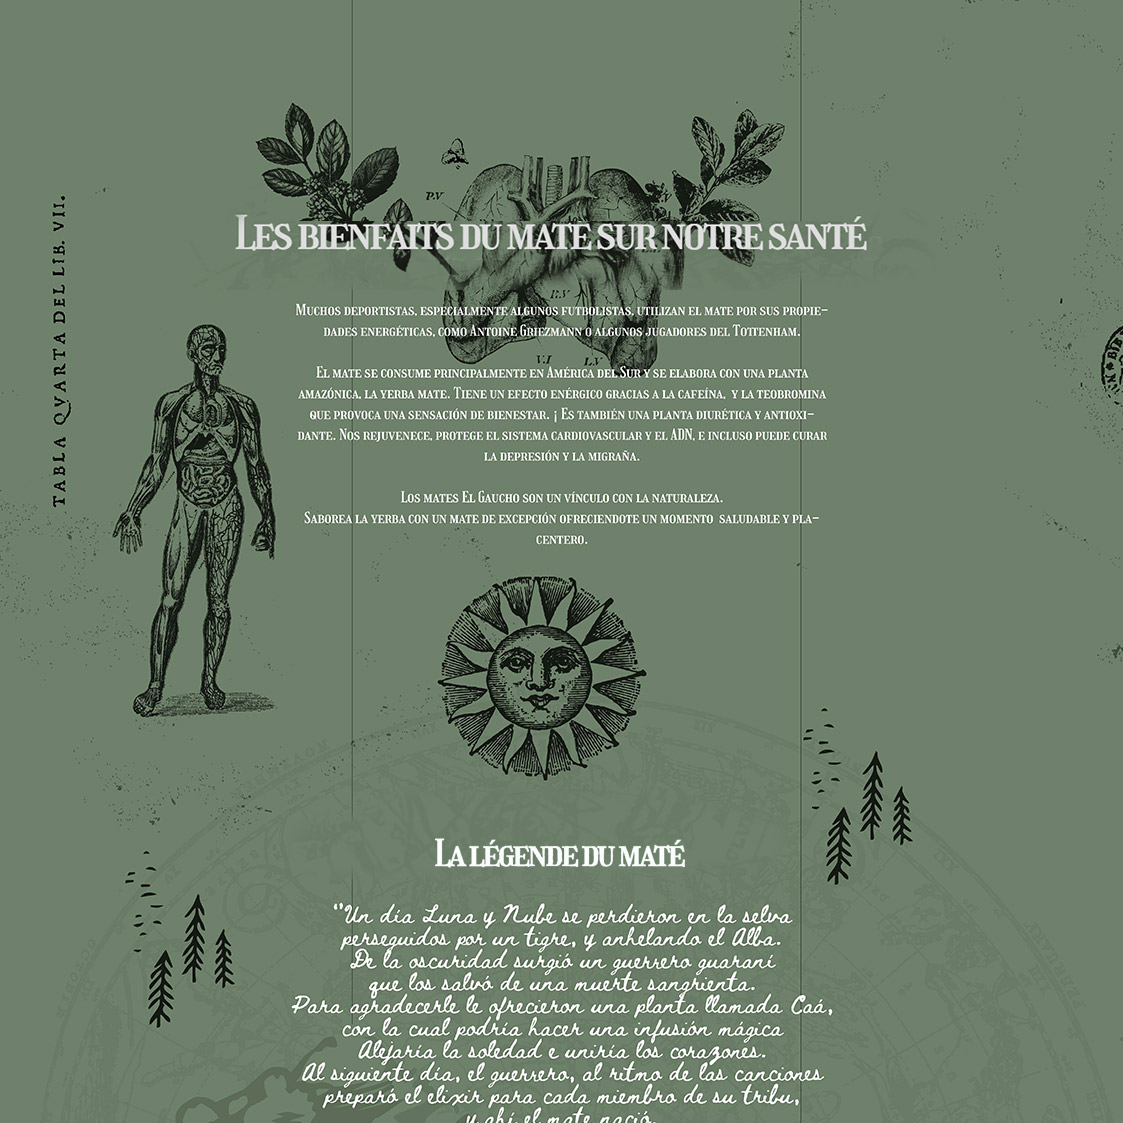 Diseño de sitio web y flyer para El Gaucho, marca de mates y yerba.